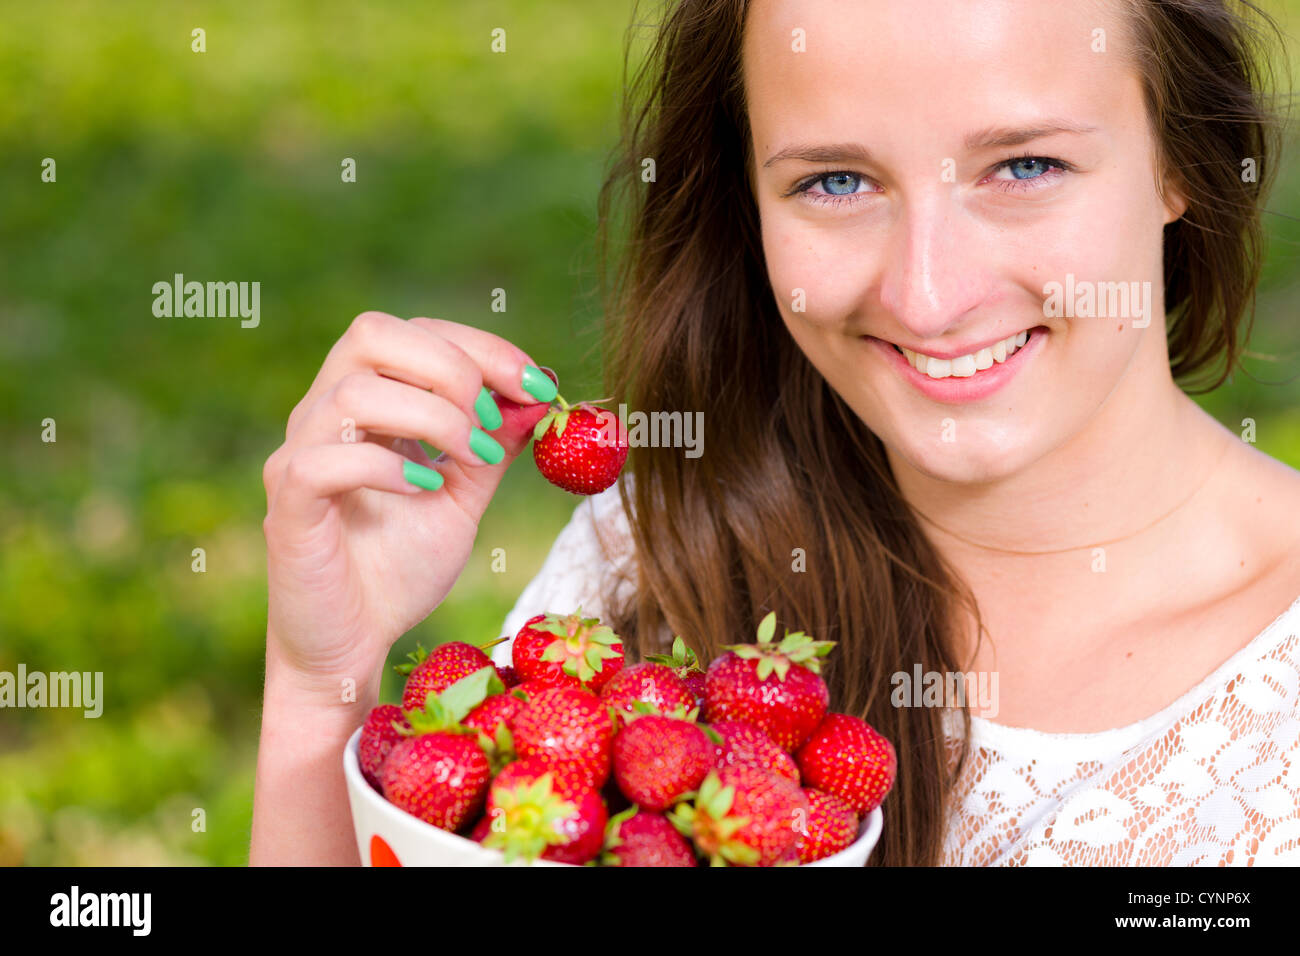 Belle fille ramasser une fraise à partir d'un bol, mettre l'accent sur les yeux Banque D'Images